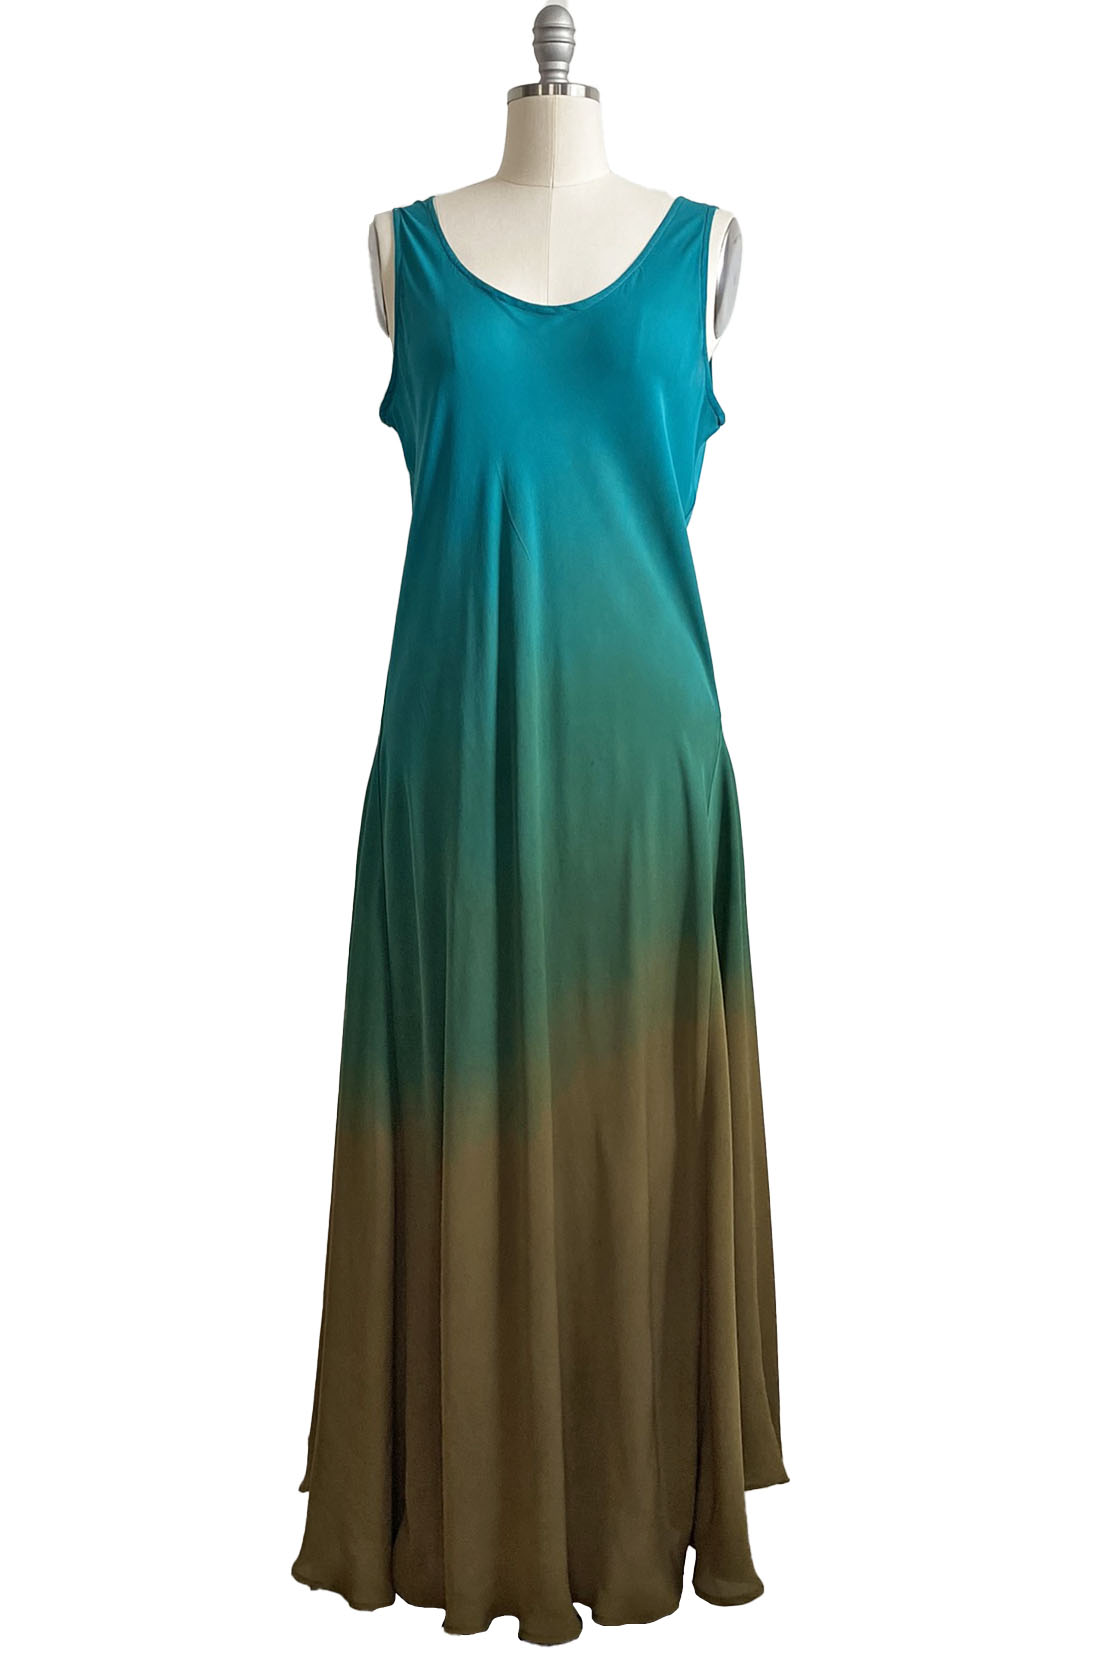 Fan Dress in Silk Georgette - Turquoise & Olive Ombre - L